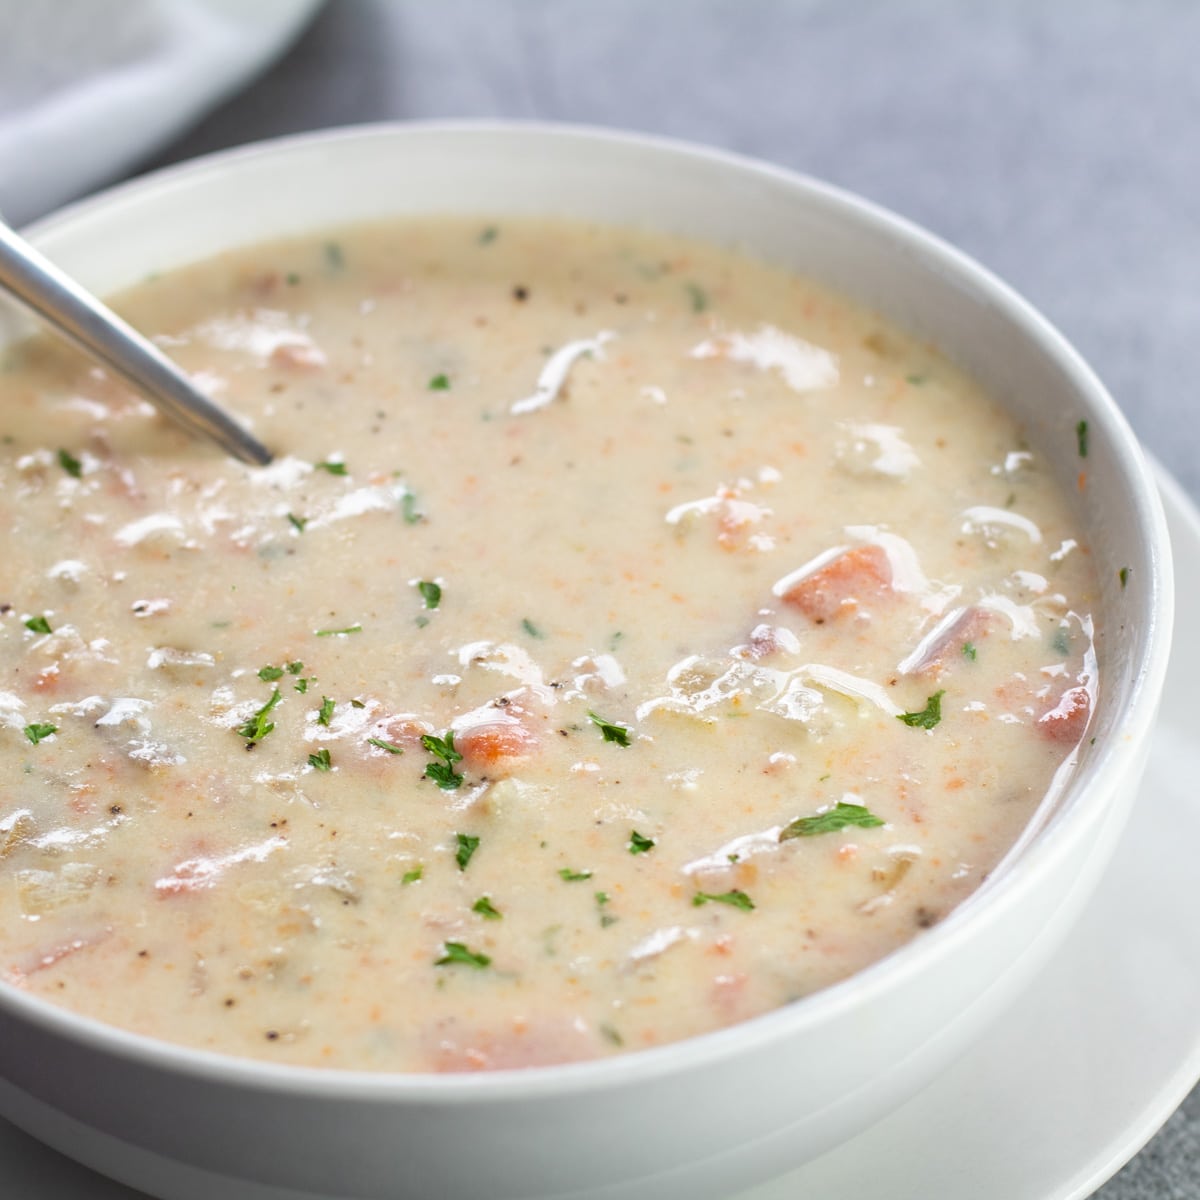 Deliciosa sopa cremosa de batata de presunto crockpot em uma tigela branca com colher.